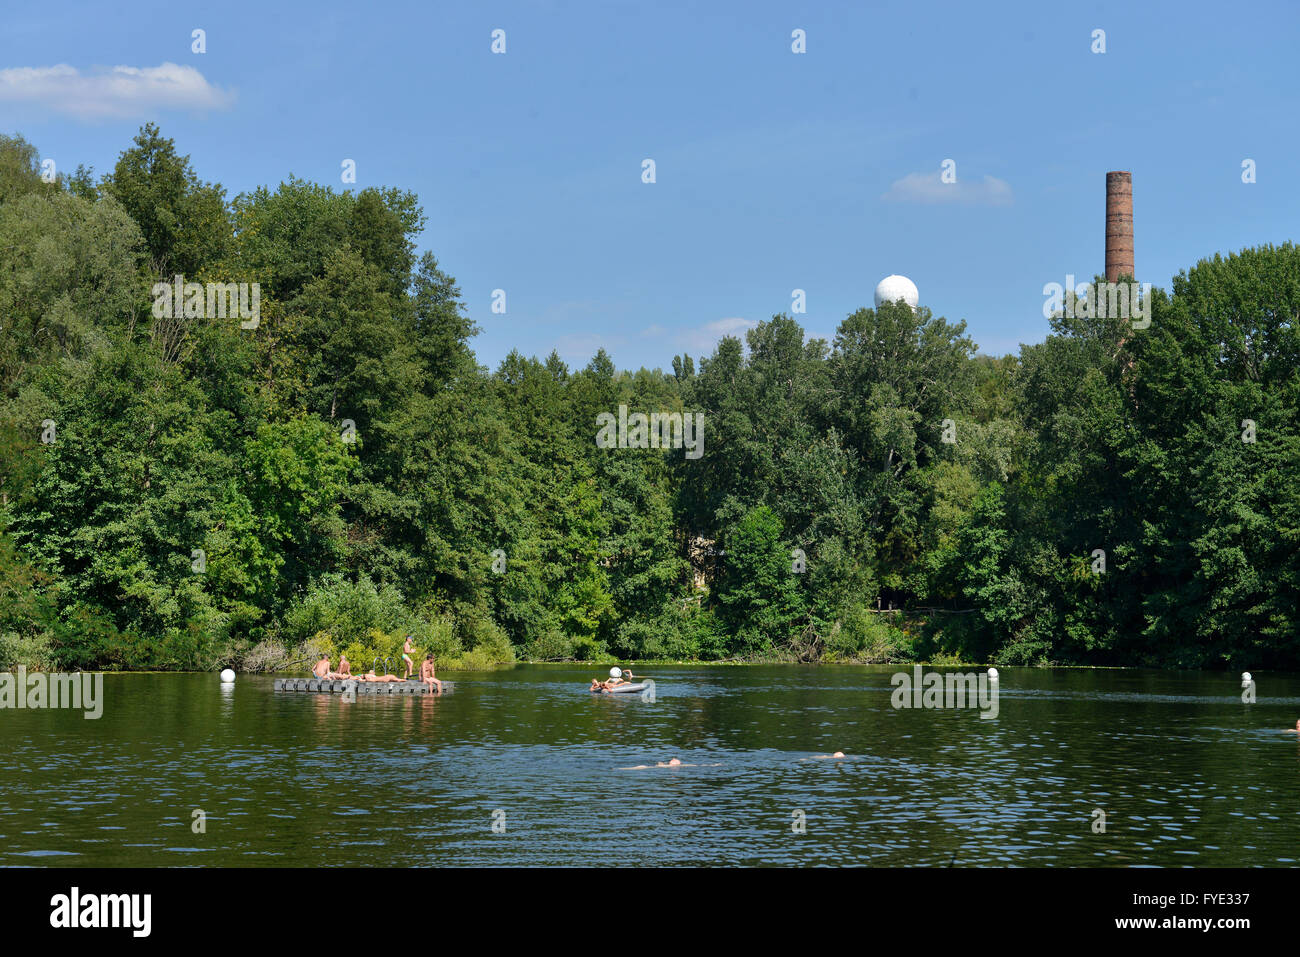 Teufelssee, Grunewald, Berlin, Deutschland Stockfotografie - Alamy